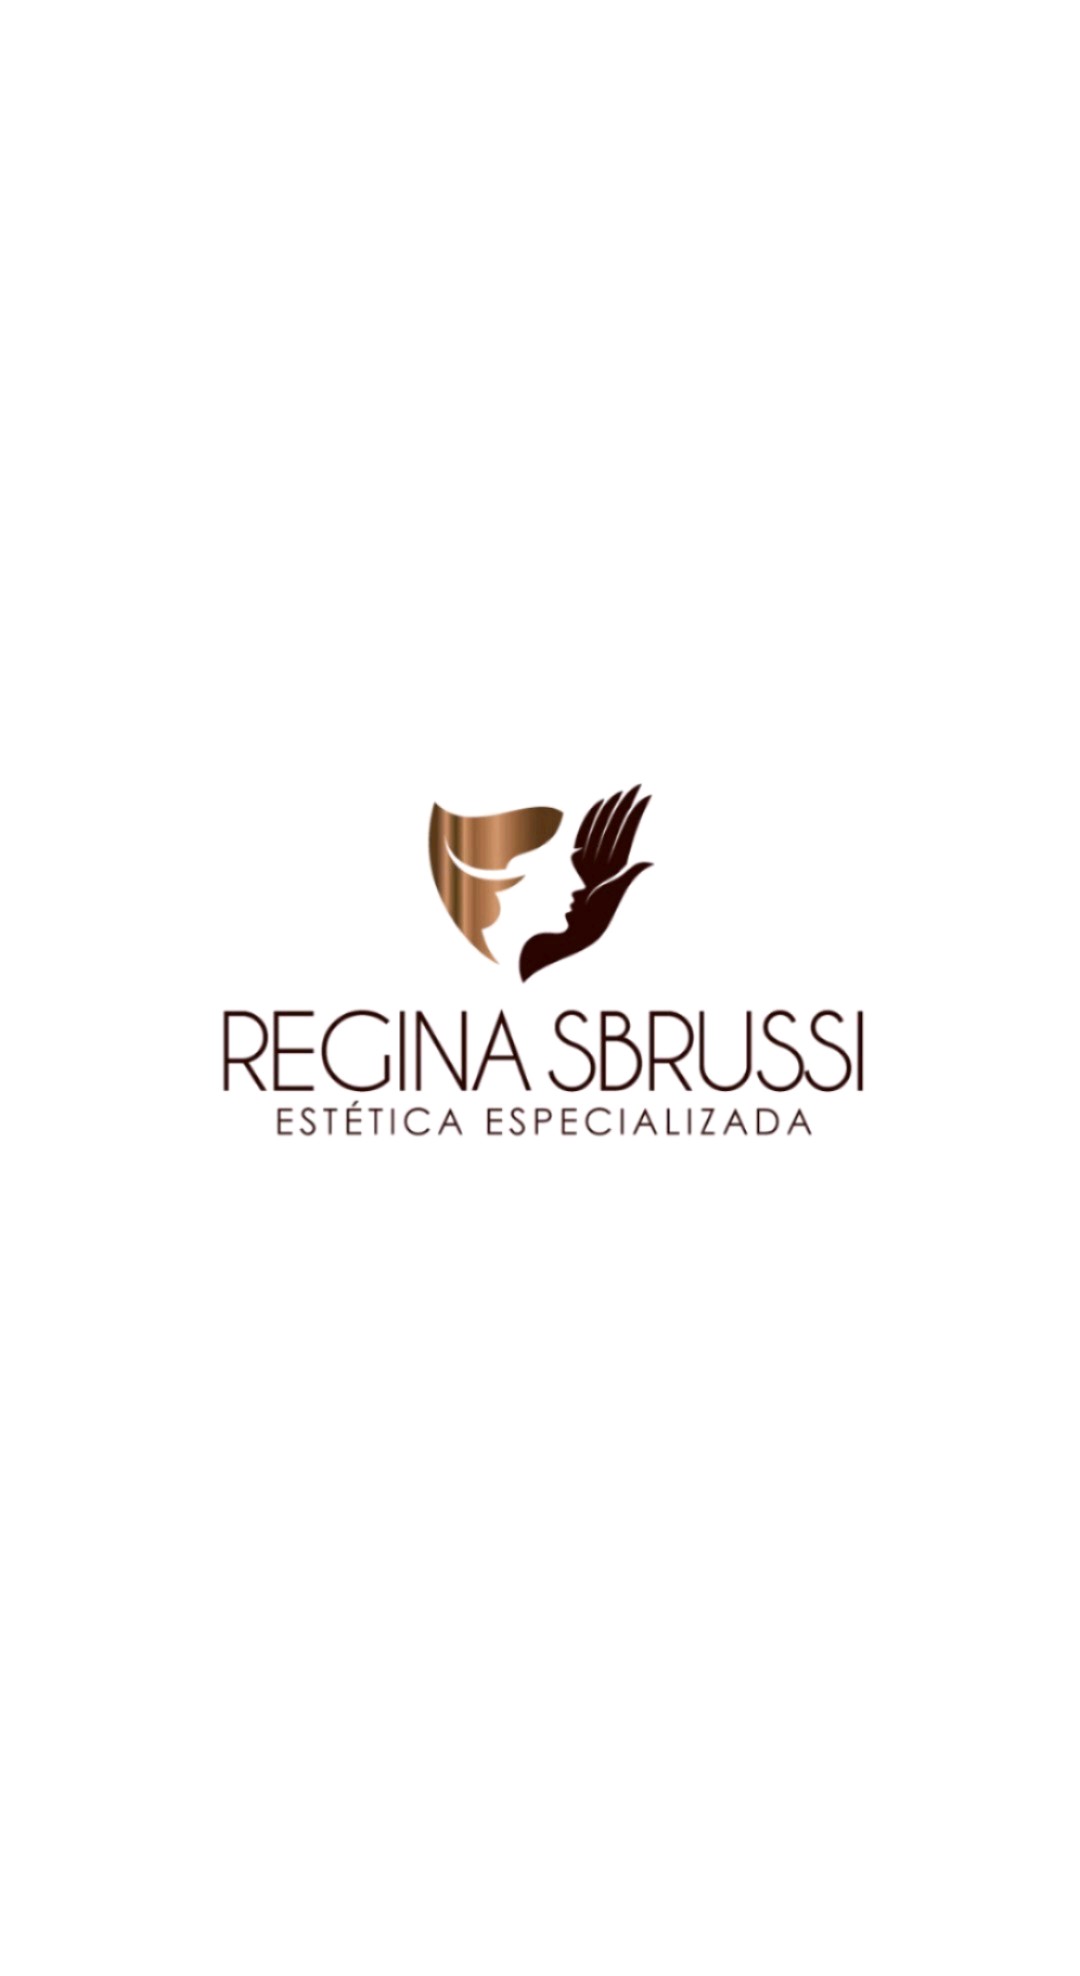 Estética Especializada Regina Sbrussi